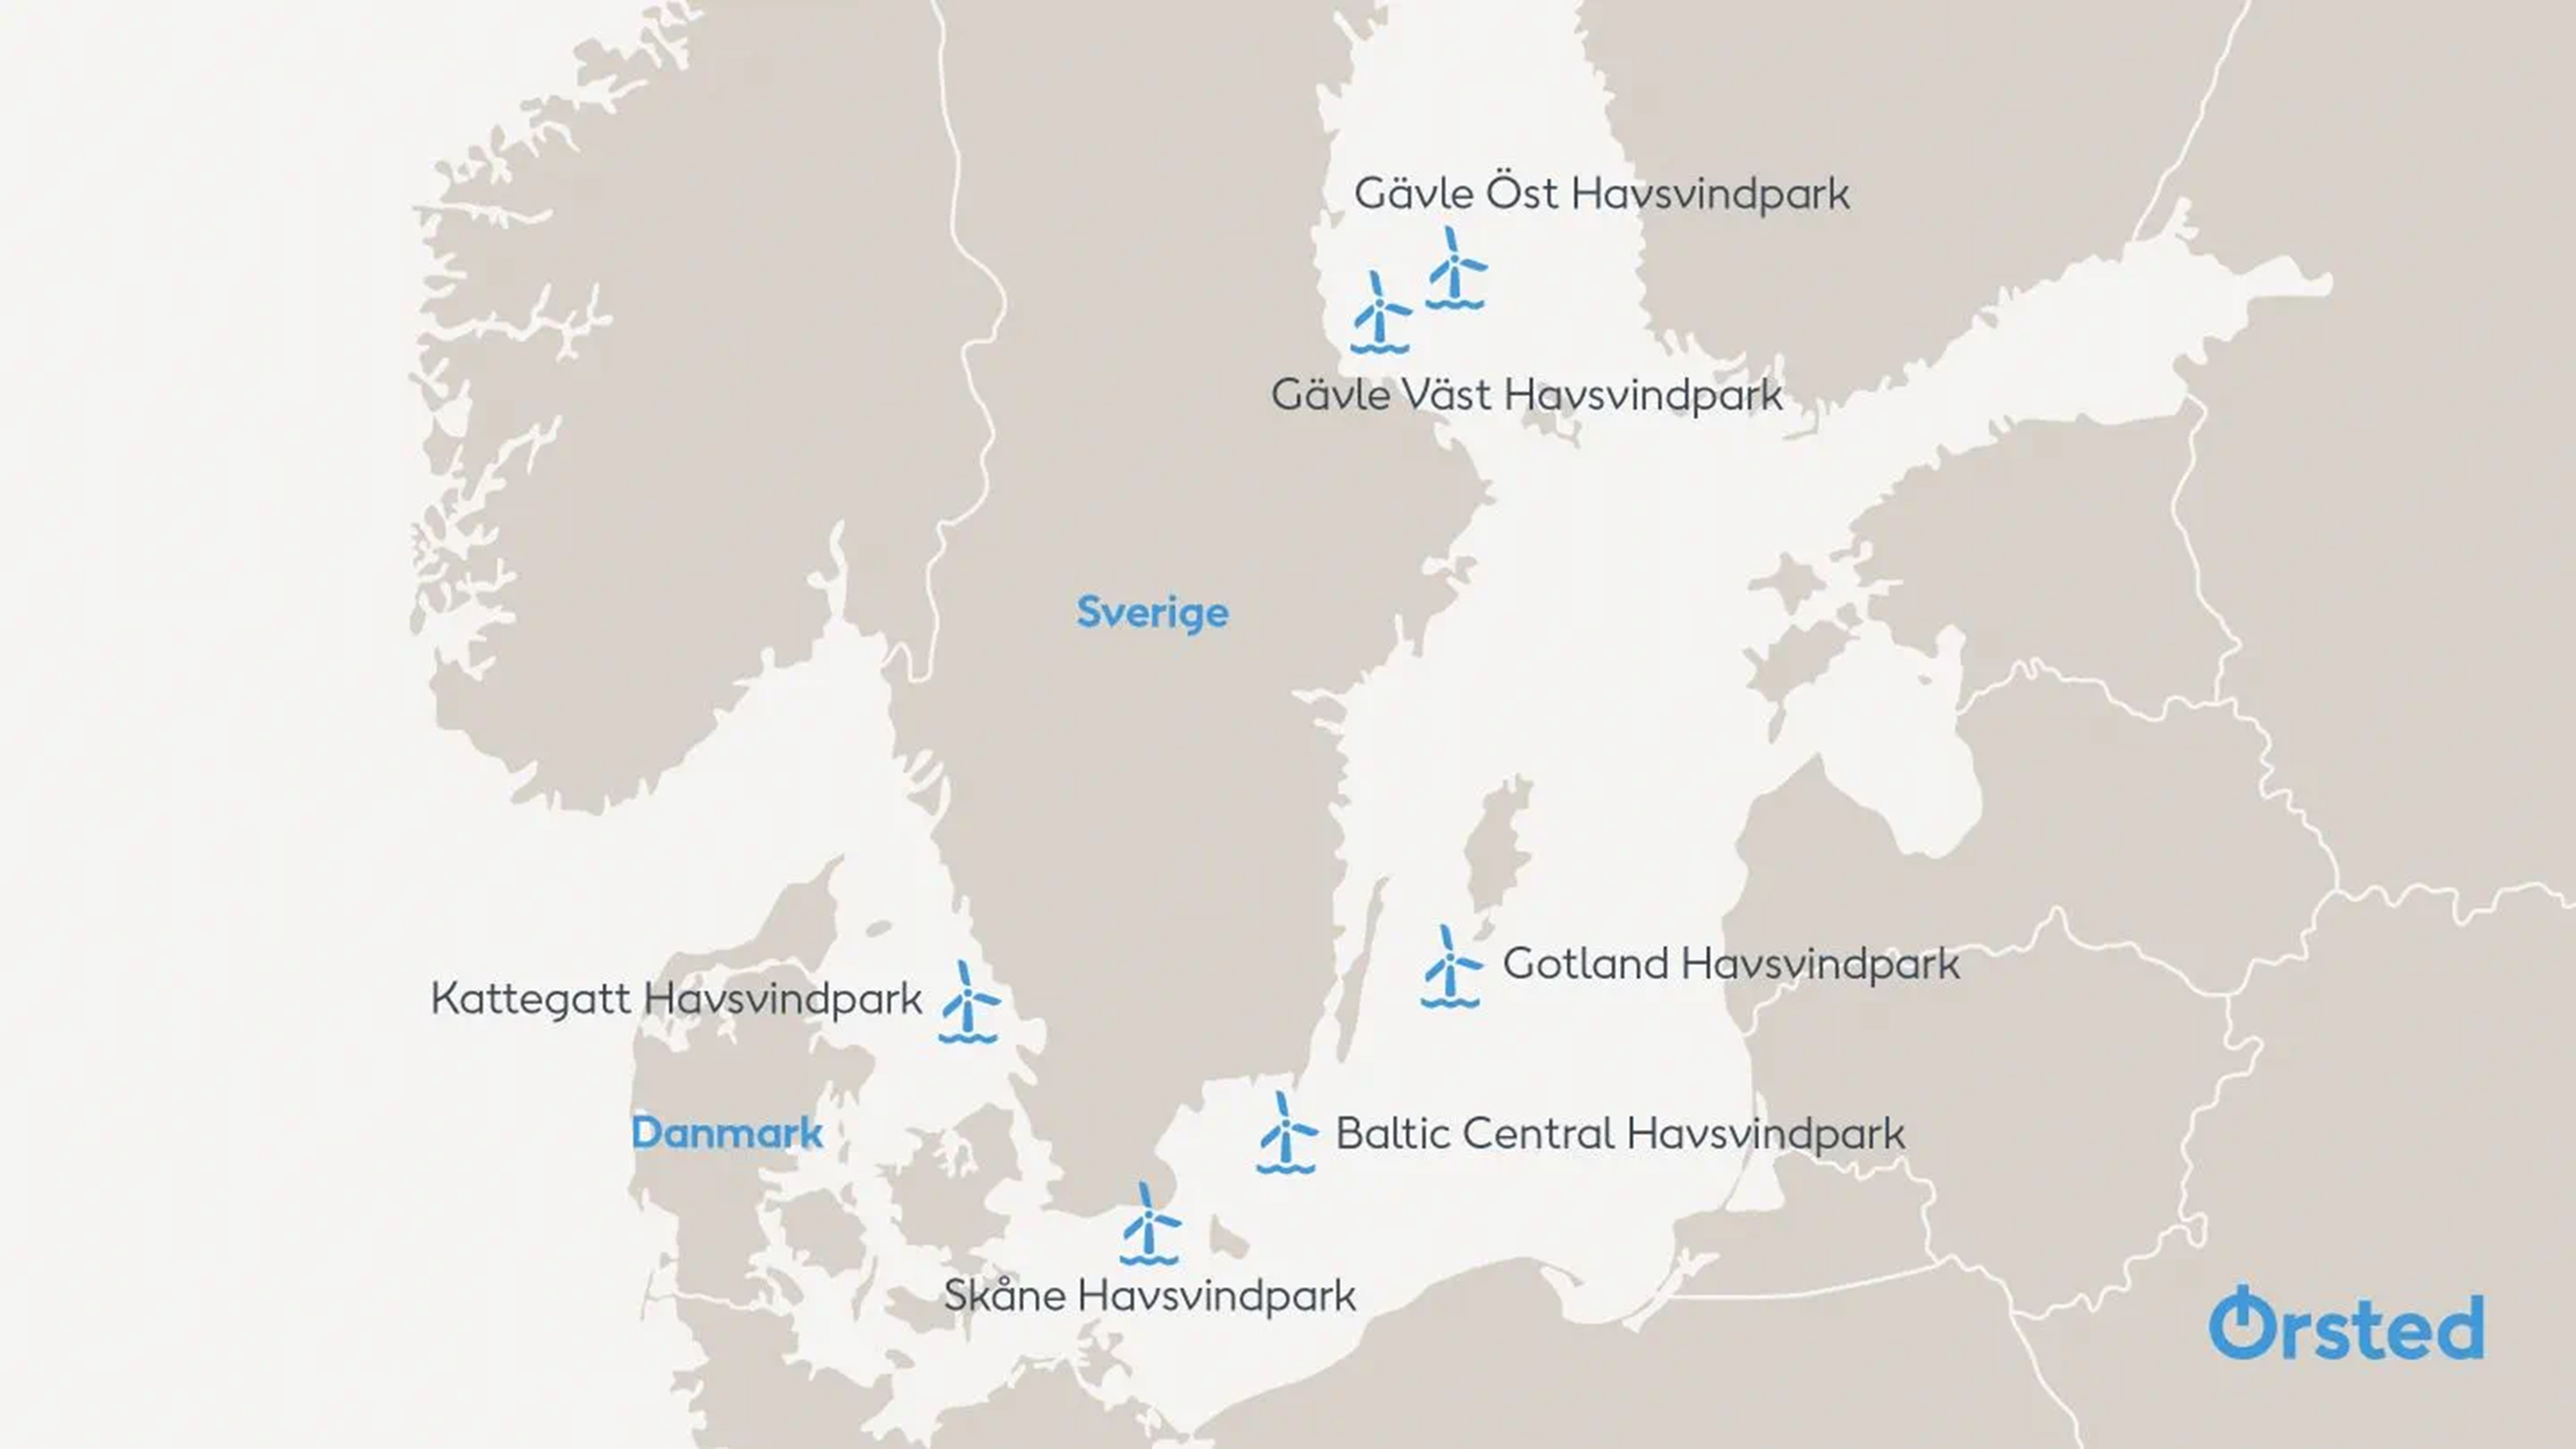 Ørsteds planerade vindkraftsprojekt runt Sveriges kuster. Karta: Ørsted.